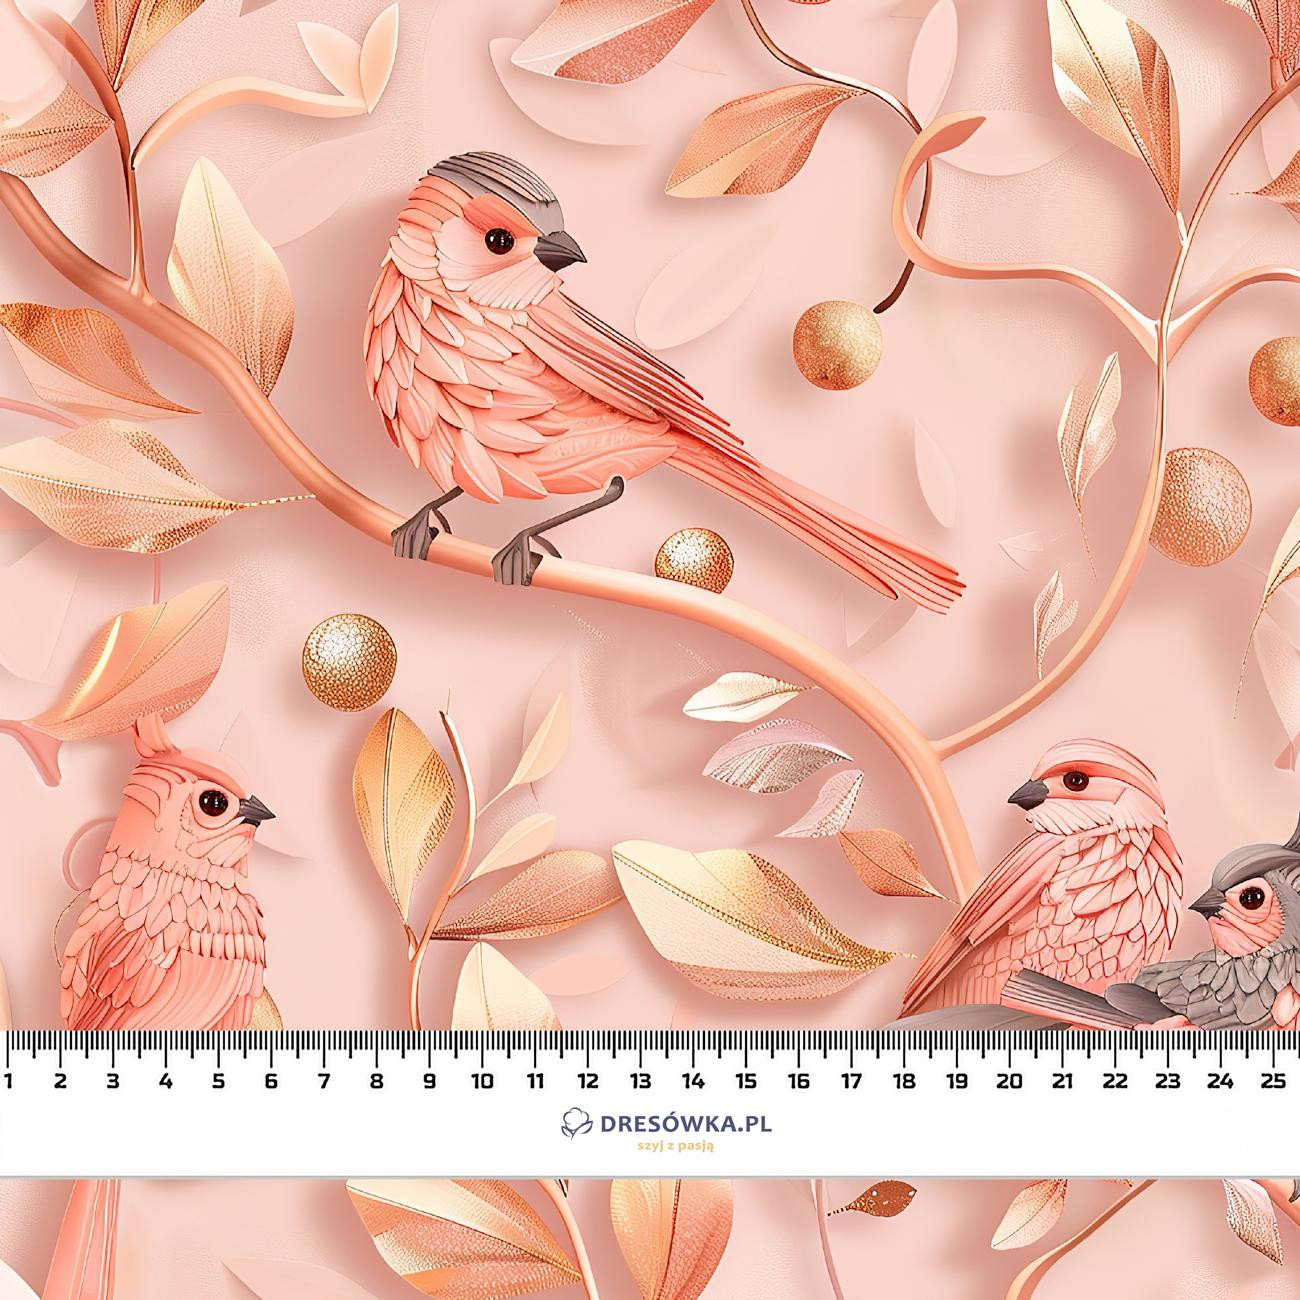 PINK BIRDS - Cotton muslin